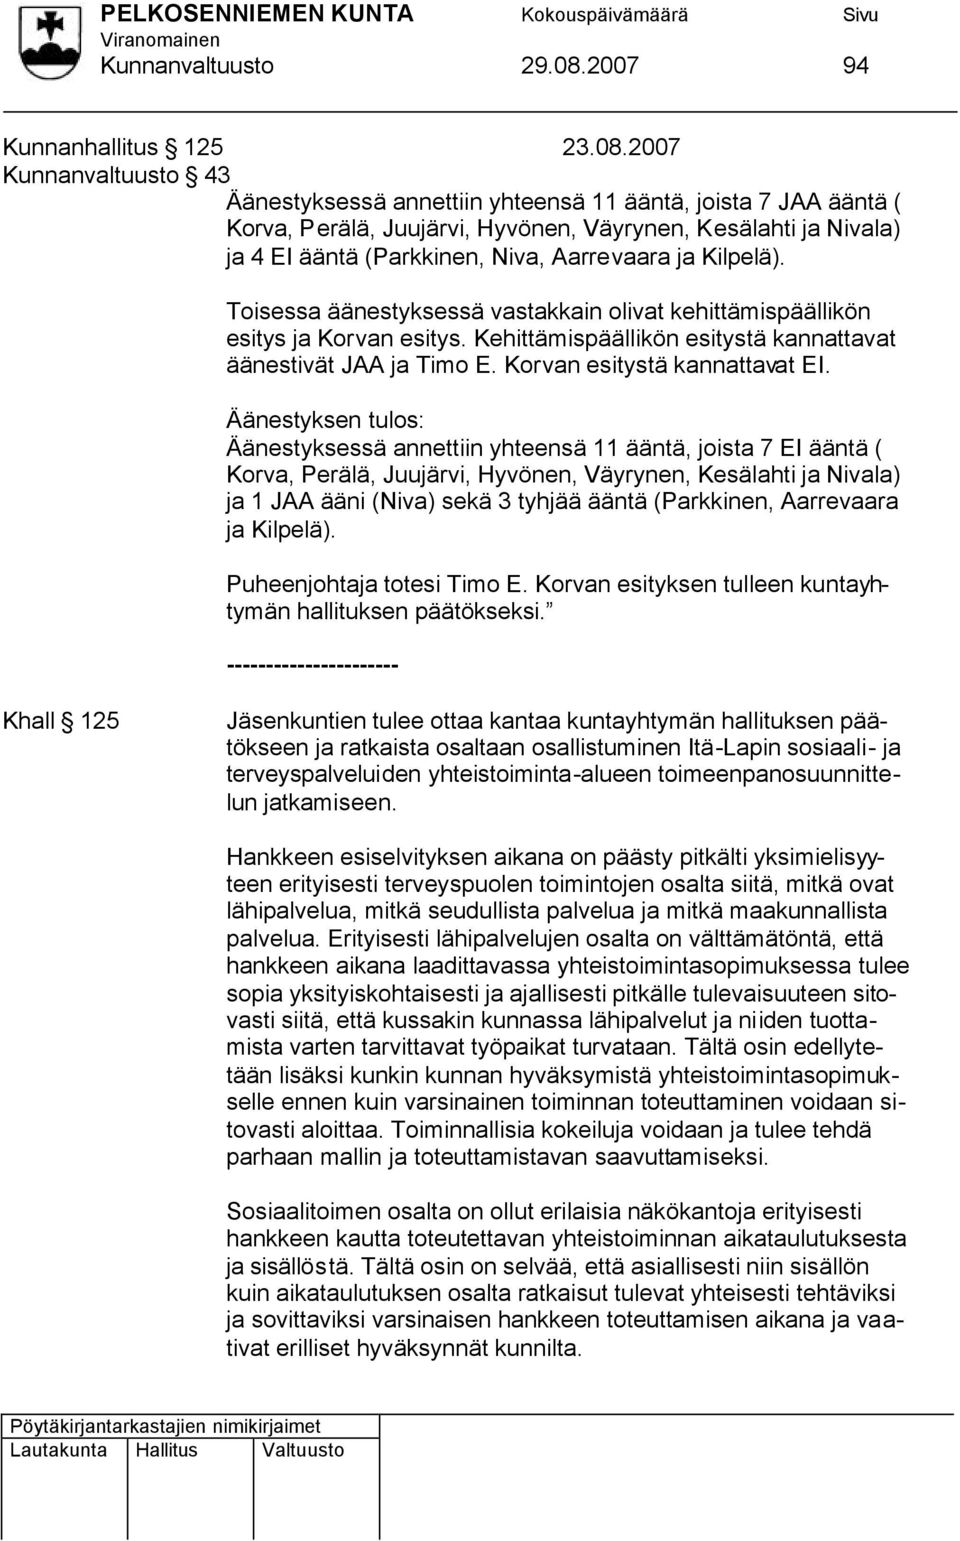 2007 Kunnanvaltuusto 43 Äänestyksessä annettiin yhteensä 11 ääntä, joista 7 JAA ääntä ( Korva, Perälä, Juujärvi, Hyvönen, Väyrynen, Kesälahti ja Nivala) ja 4 EI ääntä (Parkkinen, Niva, Aarrevaara ja